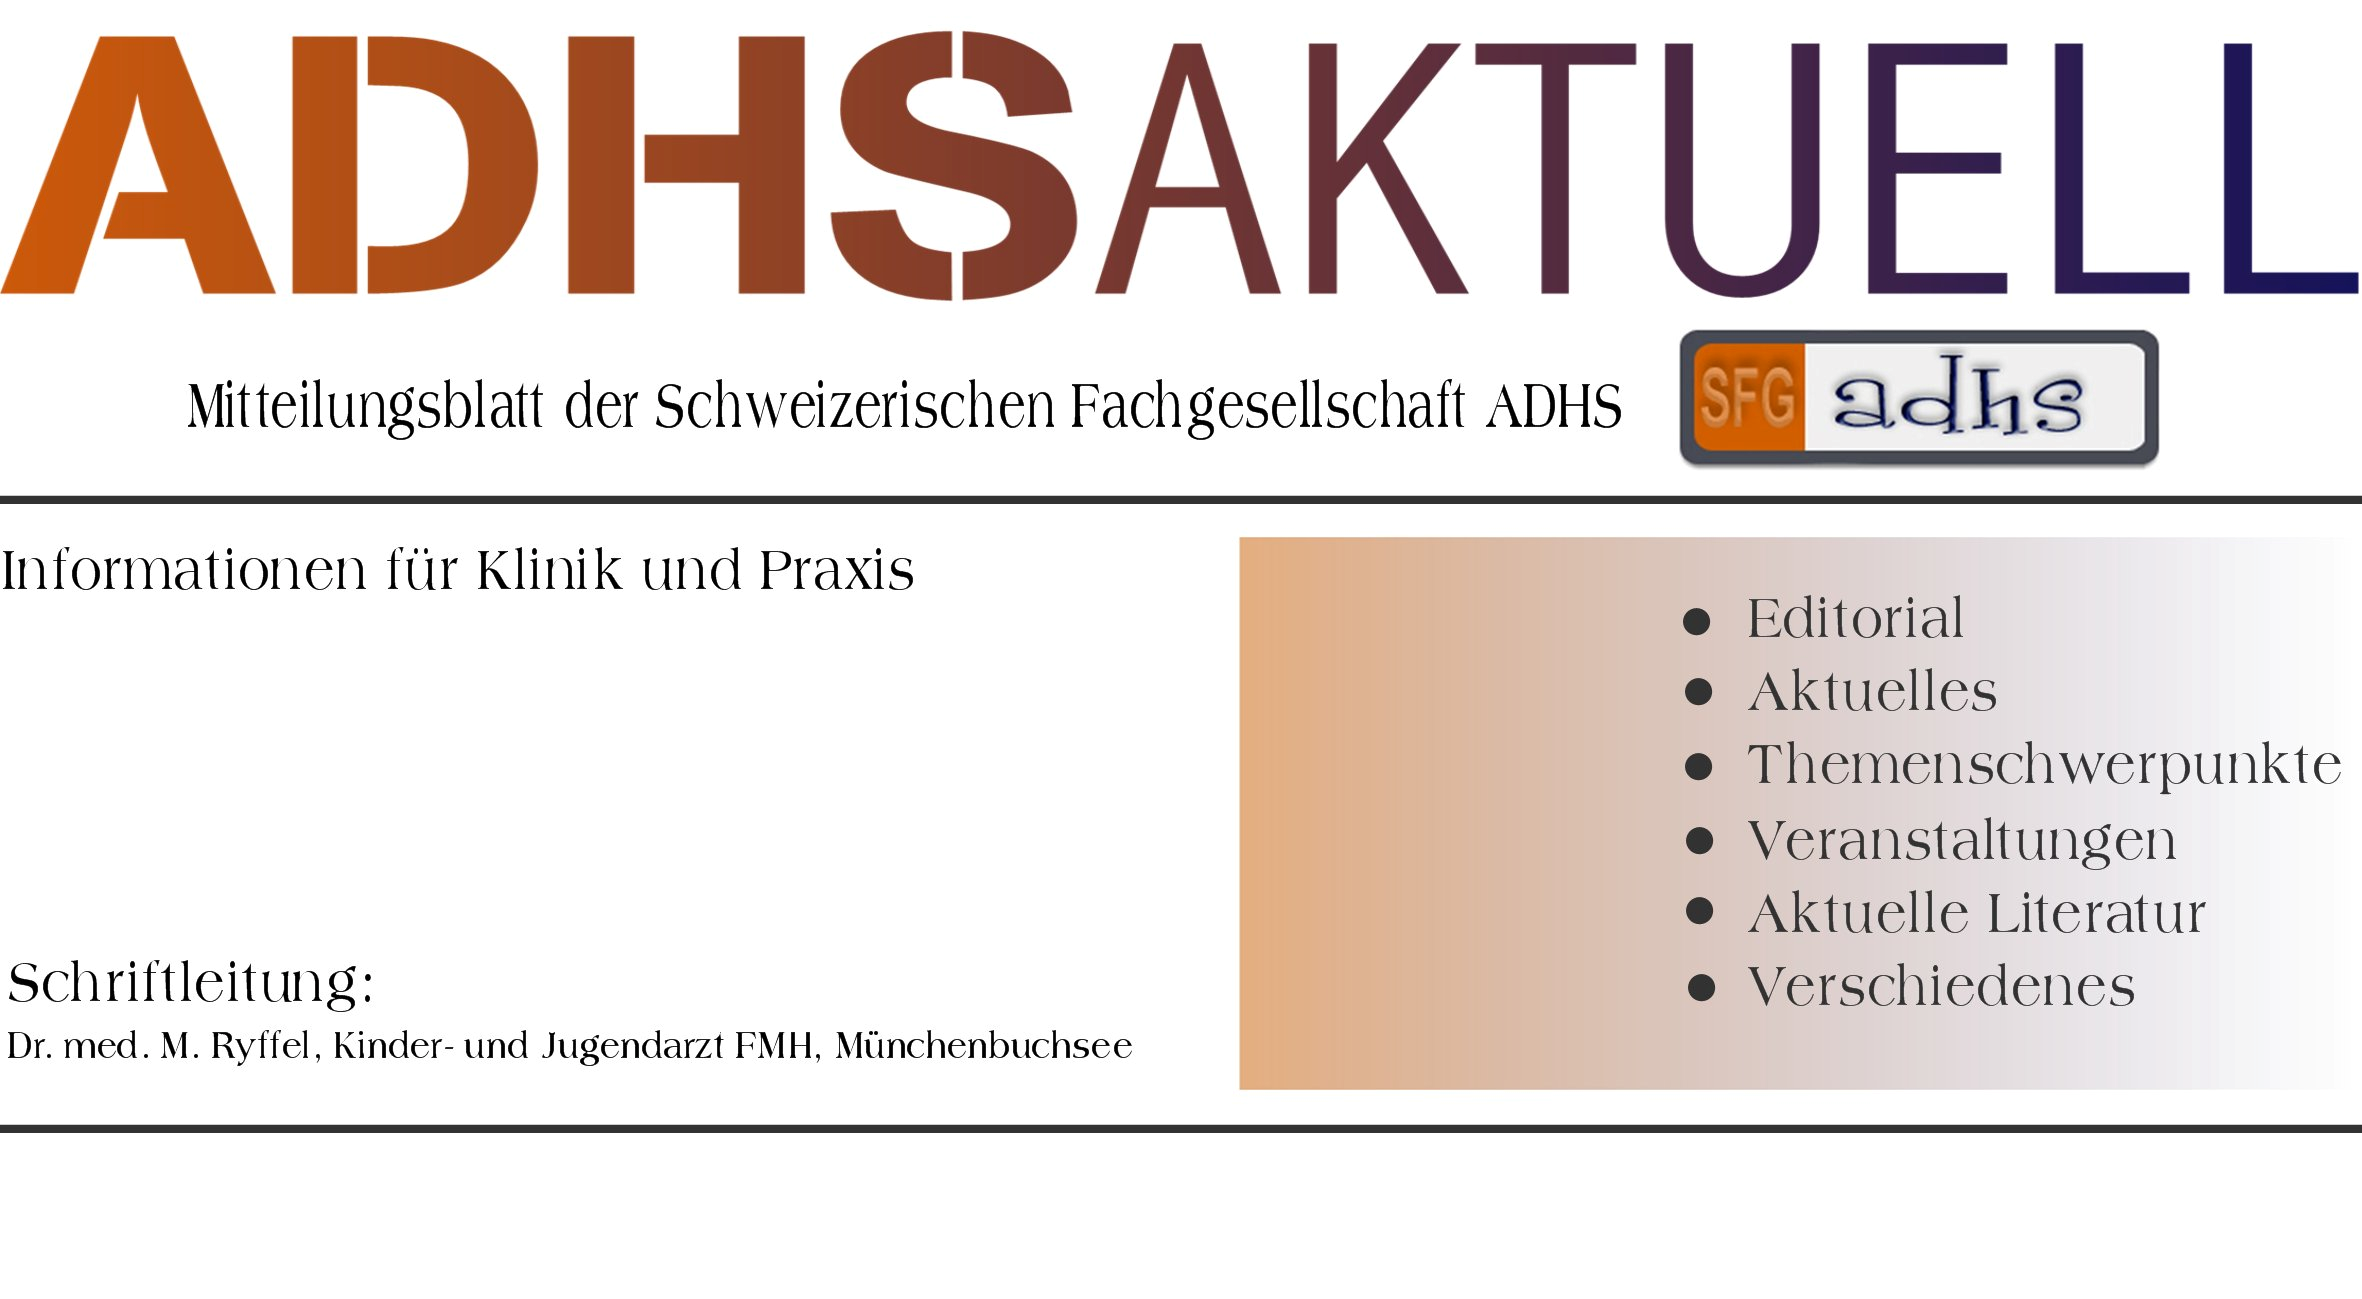 A us g a b e N r. 2 9 MÅrz 2 0 1 1 Editorial Prof. B. Schimmelmann, KJPD Bern, stellt in seinem Artikel die Schwierigkeiten dar, die sich bei der Erforschung der Ursachen von ADHS ergeben.